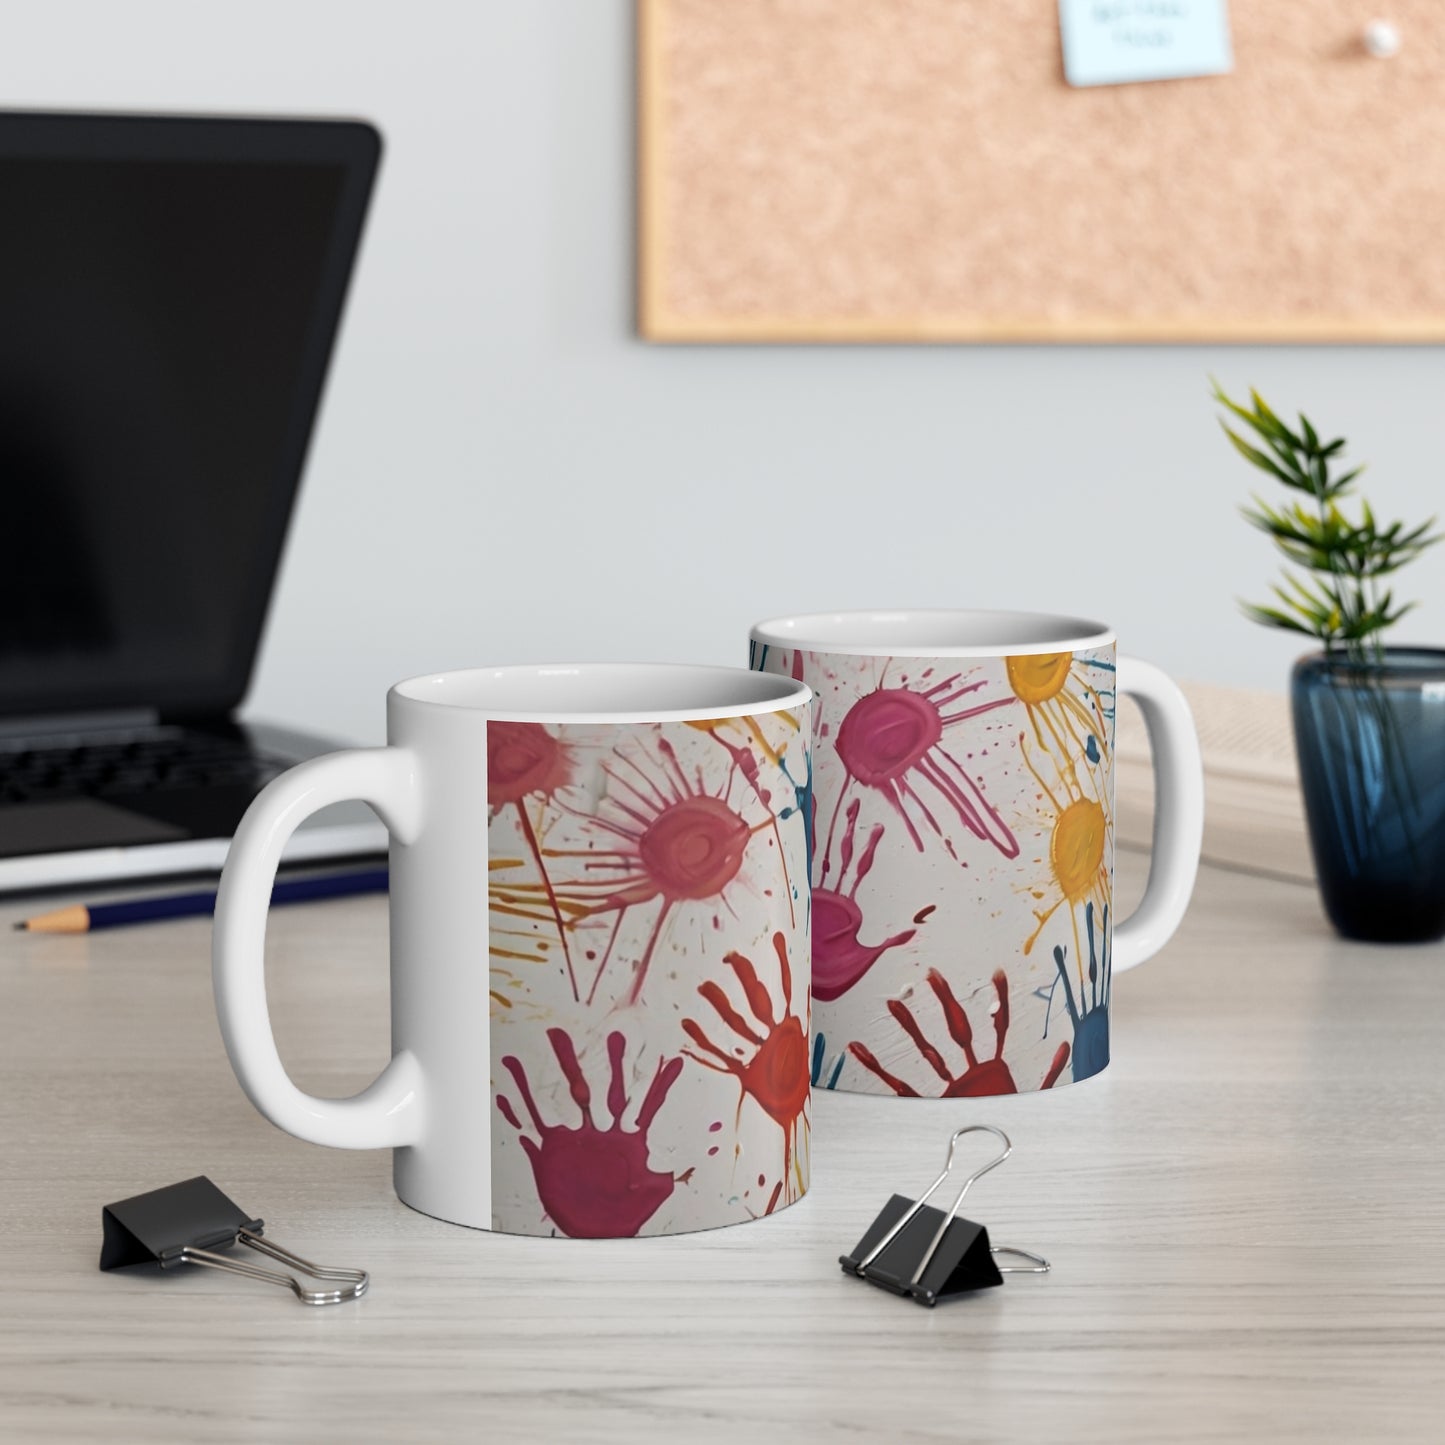 Colourful Messy Handprints Mug - Ceramic Coffee Mug 11oz